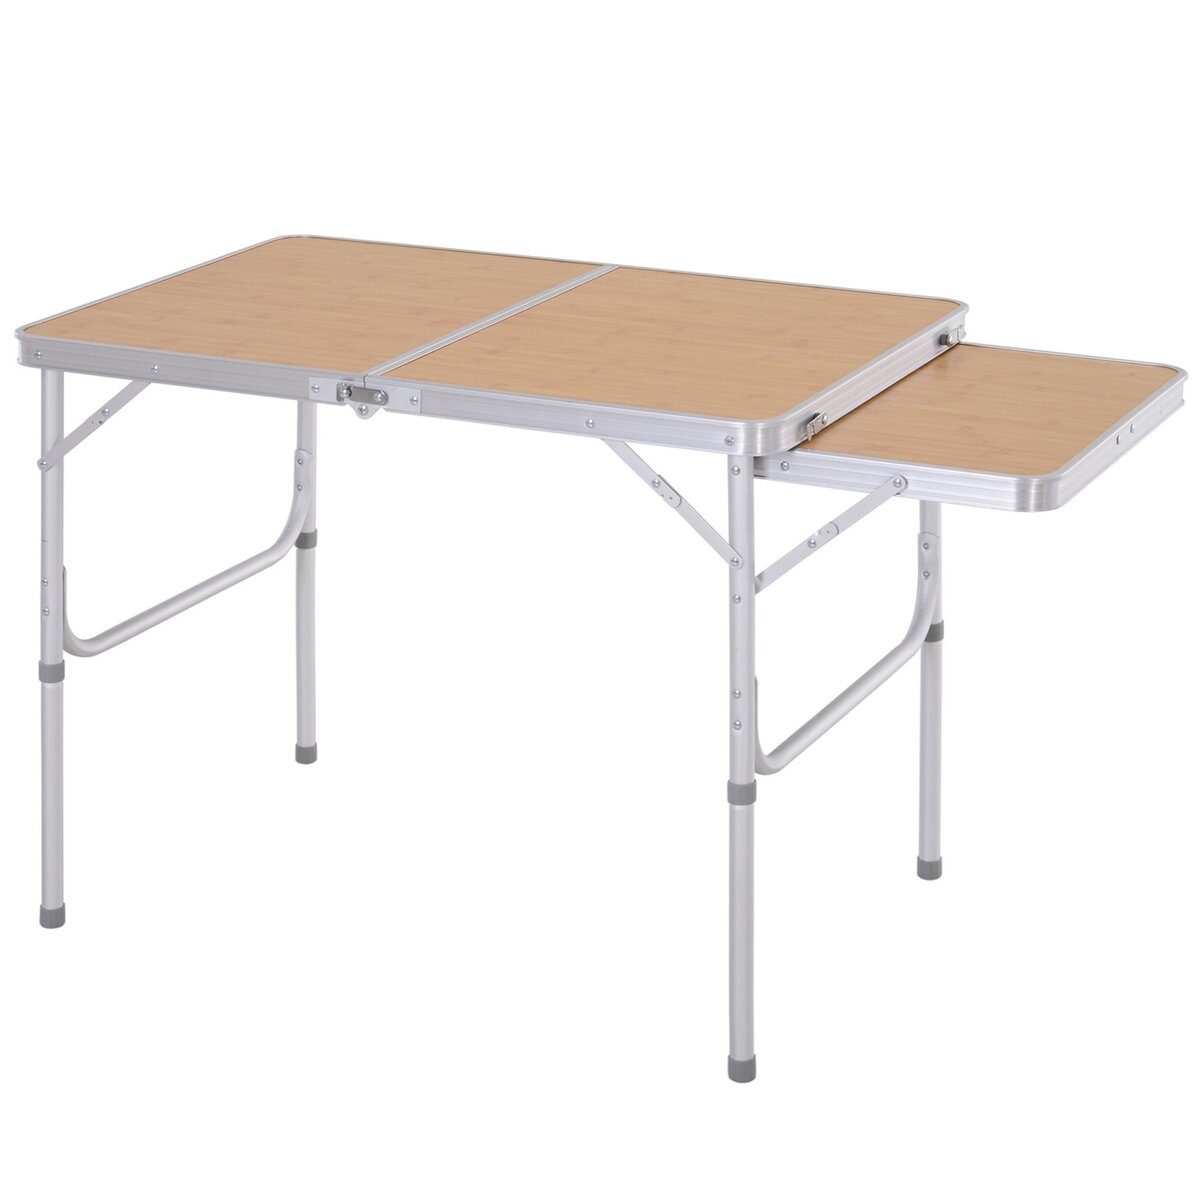 OUTSUNNY Table pliante table de camping table de jardin avec rallonge  hauteur réglable aluminium MDF imitation bambou pas cher 